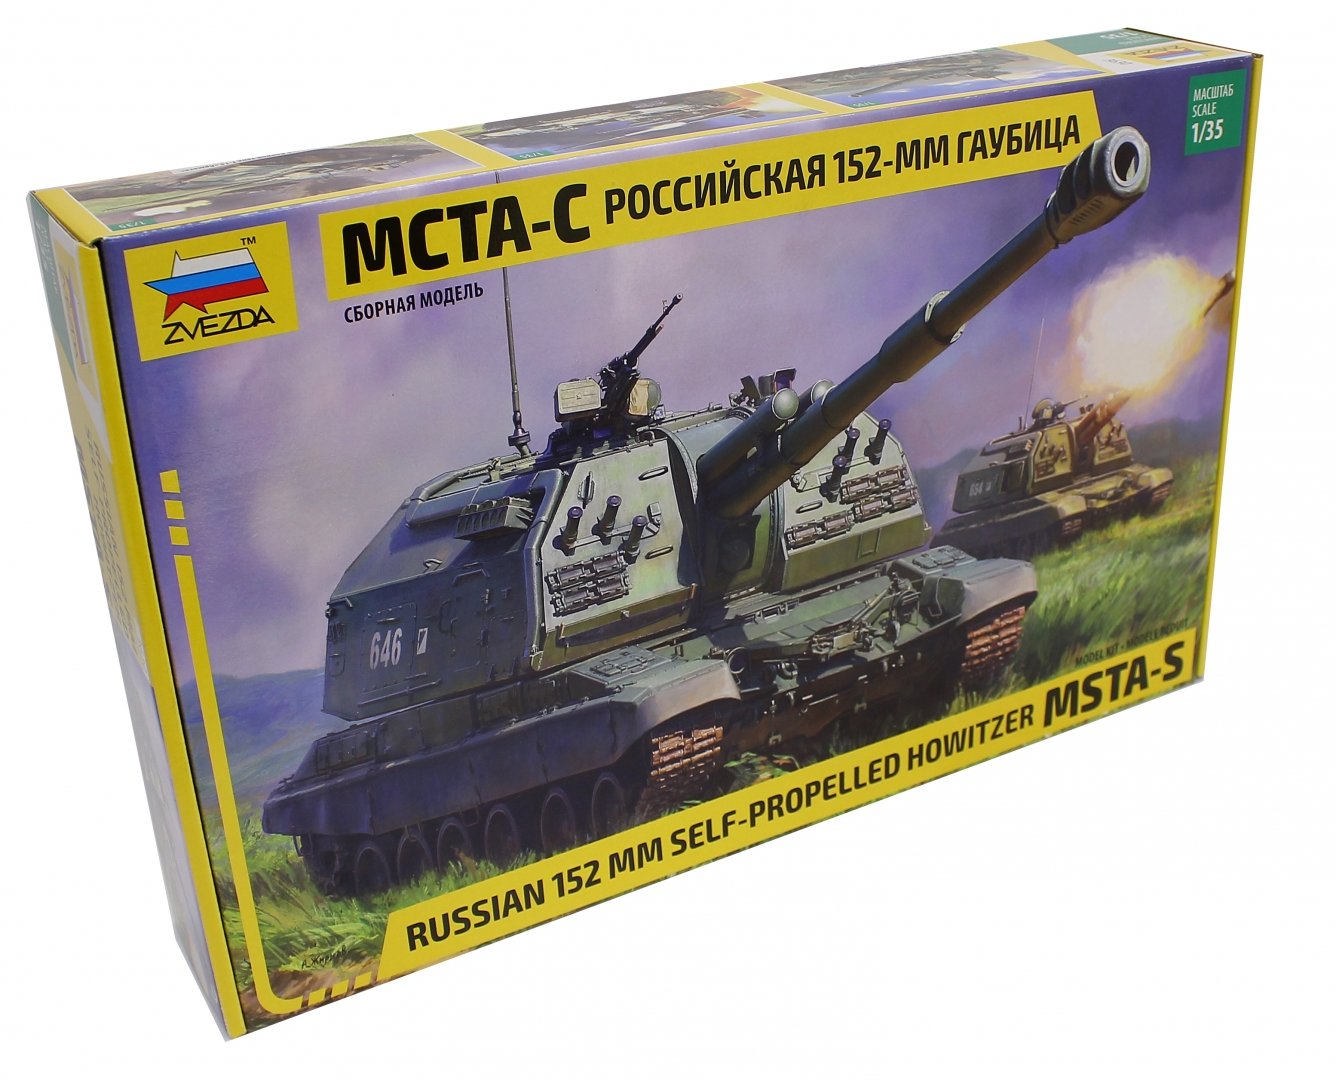 Иллюстрация 1 из 7 для Сборная модель "Российская 152-мм гаубица МСТА-С", 1/35 (3630) | Лабиринт - игрушки. Источник: Лабиринт